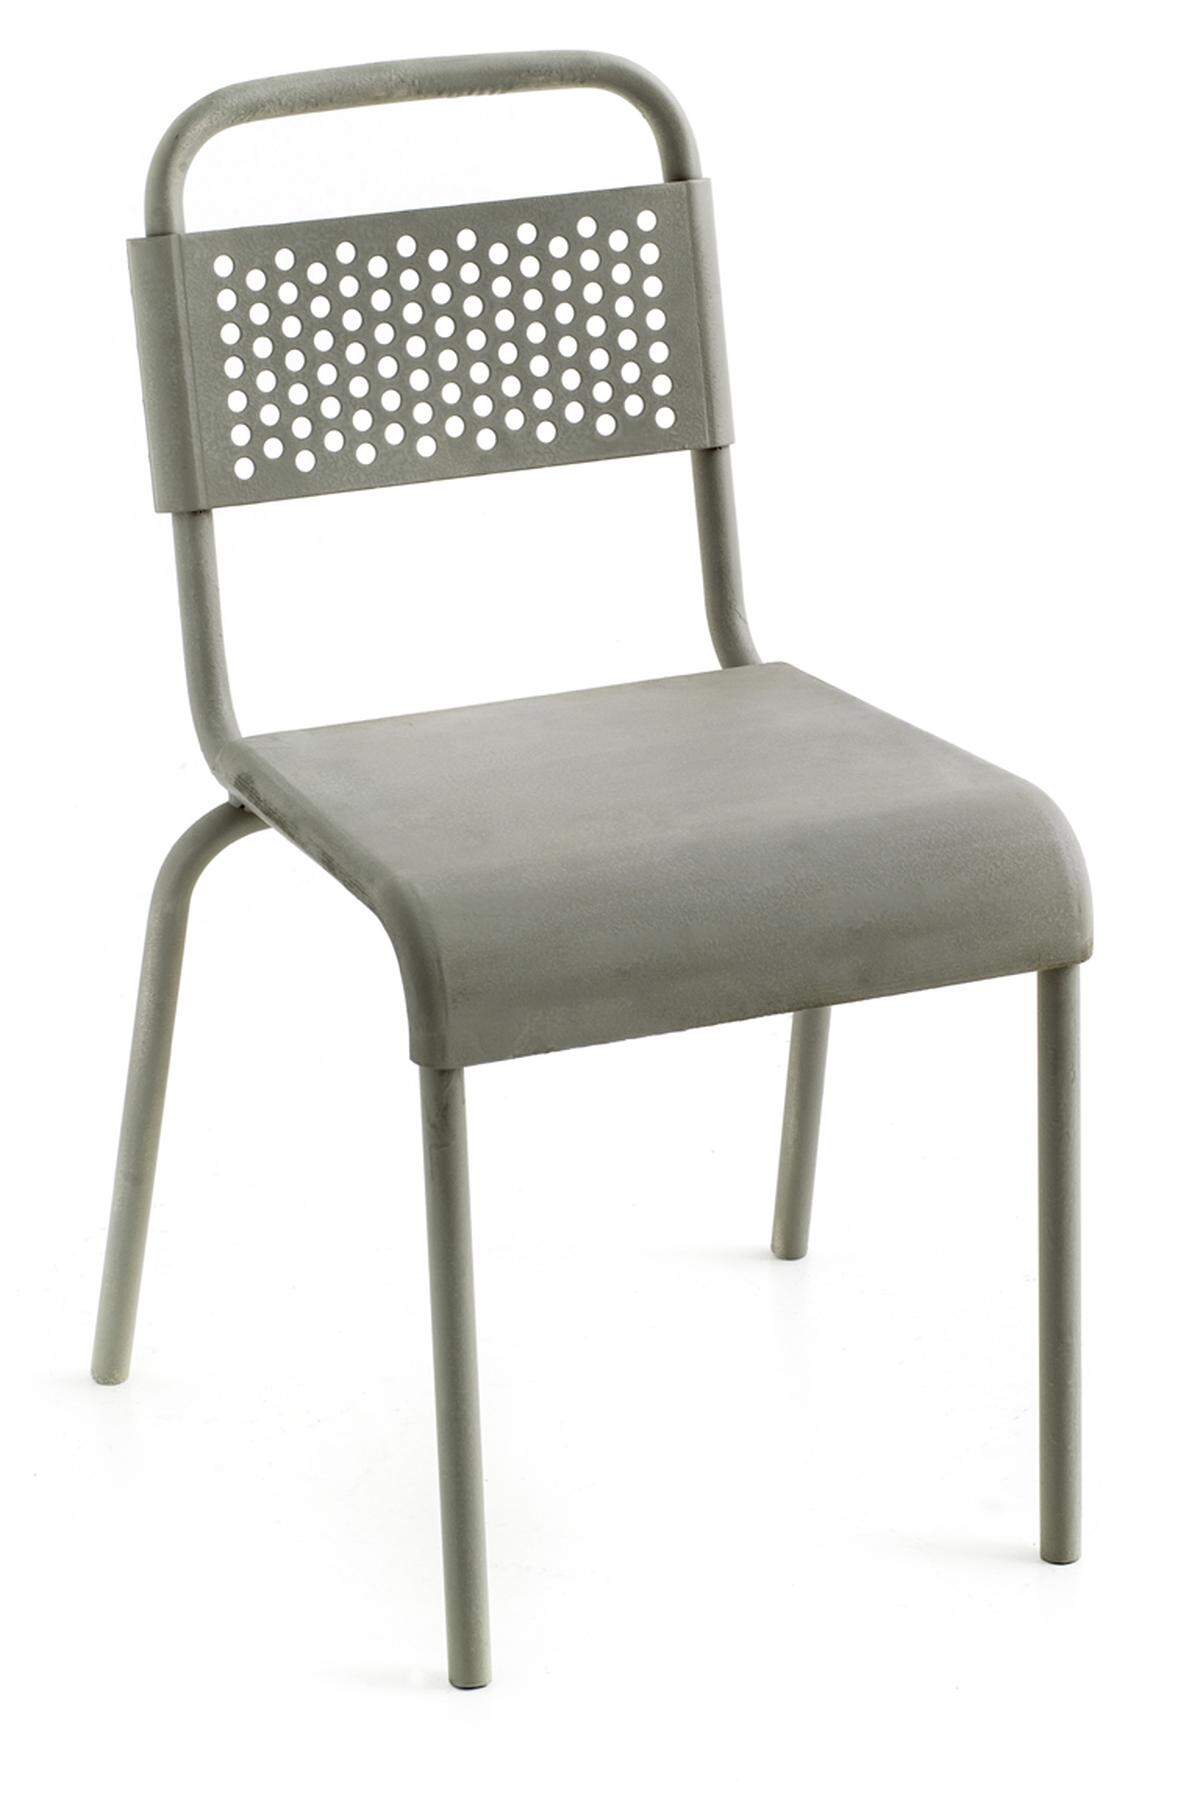 Näher am Meeresniveau könnte man sich den „Nizza“-Stuhl vorstellen: Diesel by Moroso hat ihn geschaffen. Als – natürlich – Update des klassischen französischen Bistrostuhls aus Aluminium